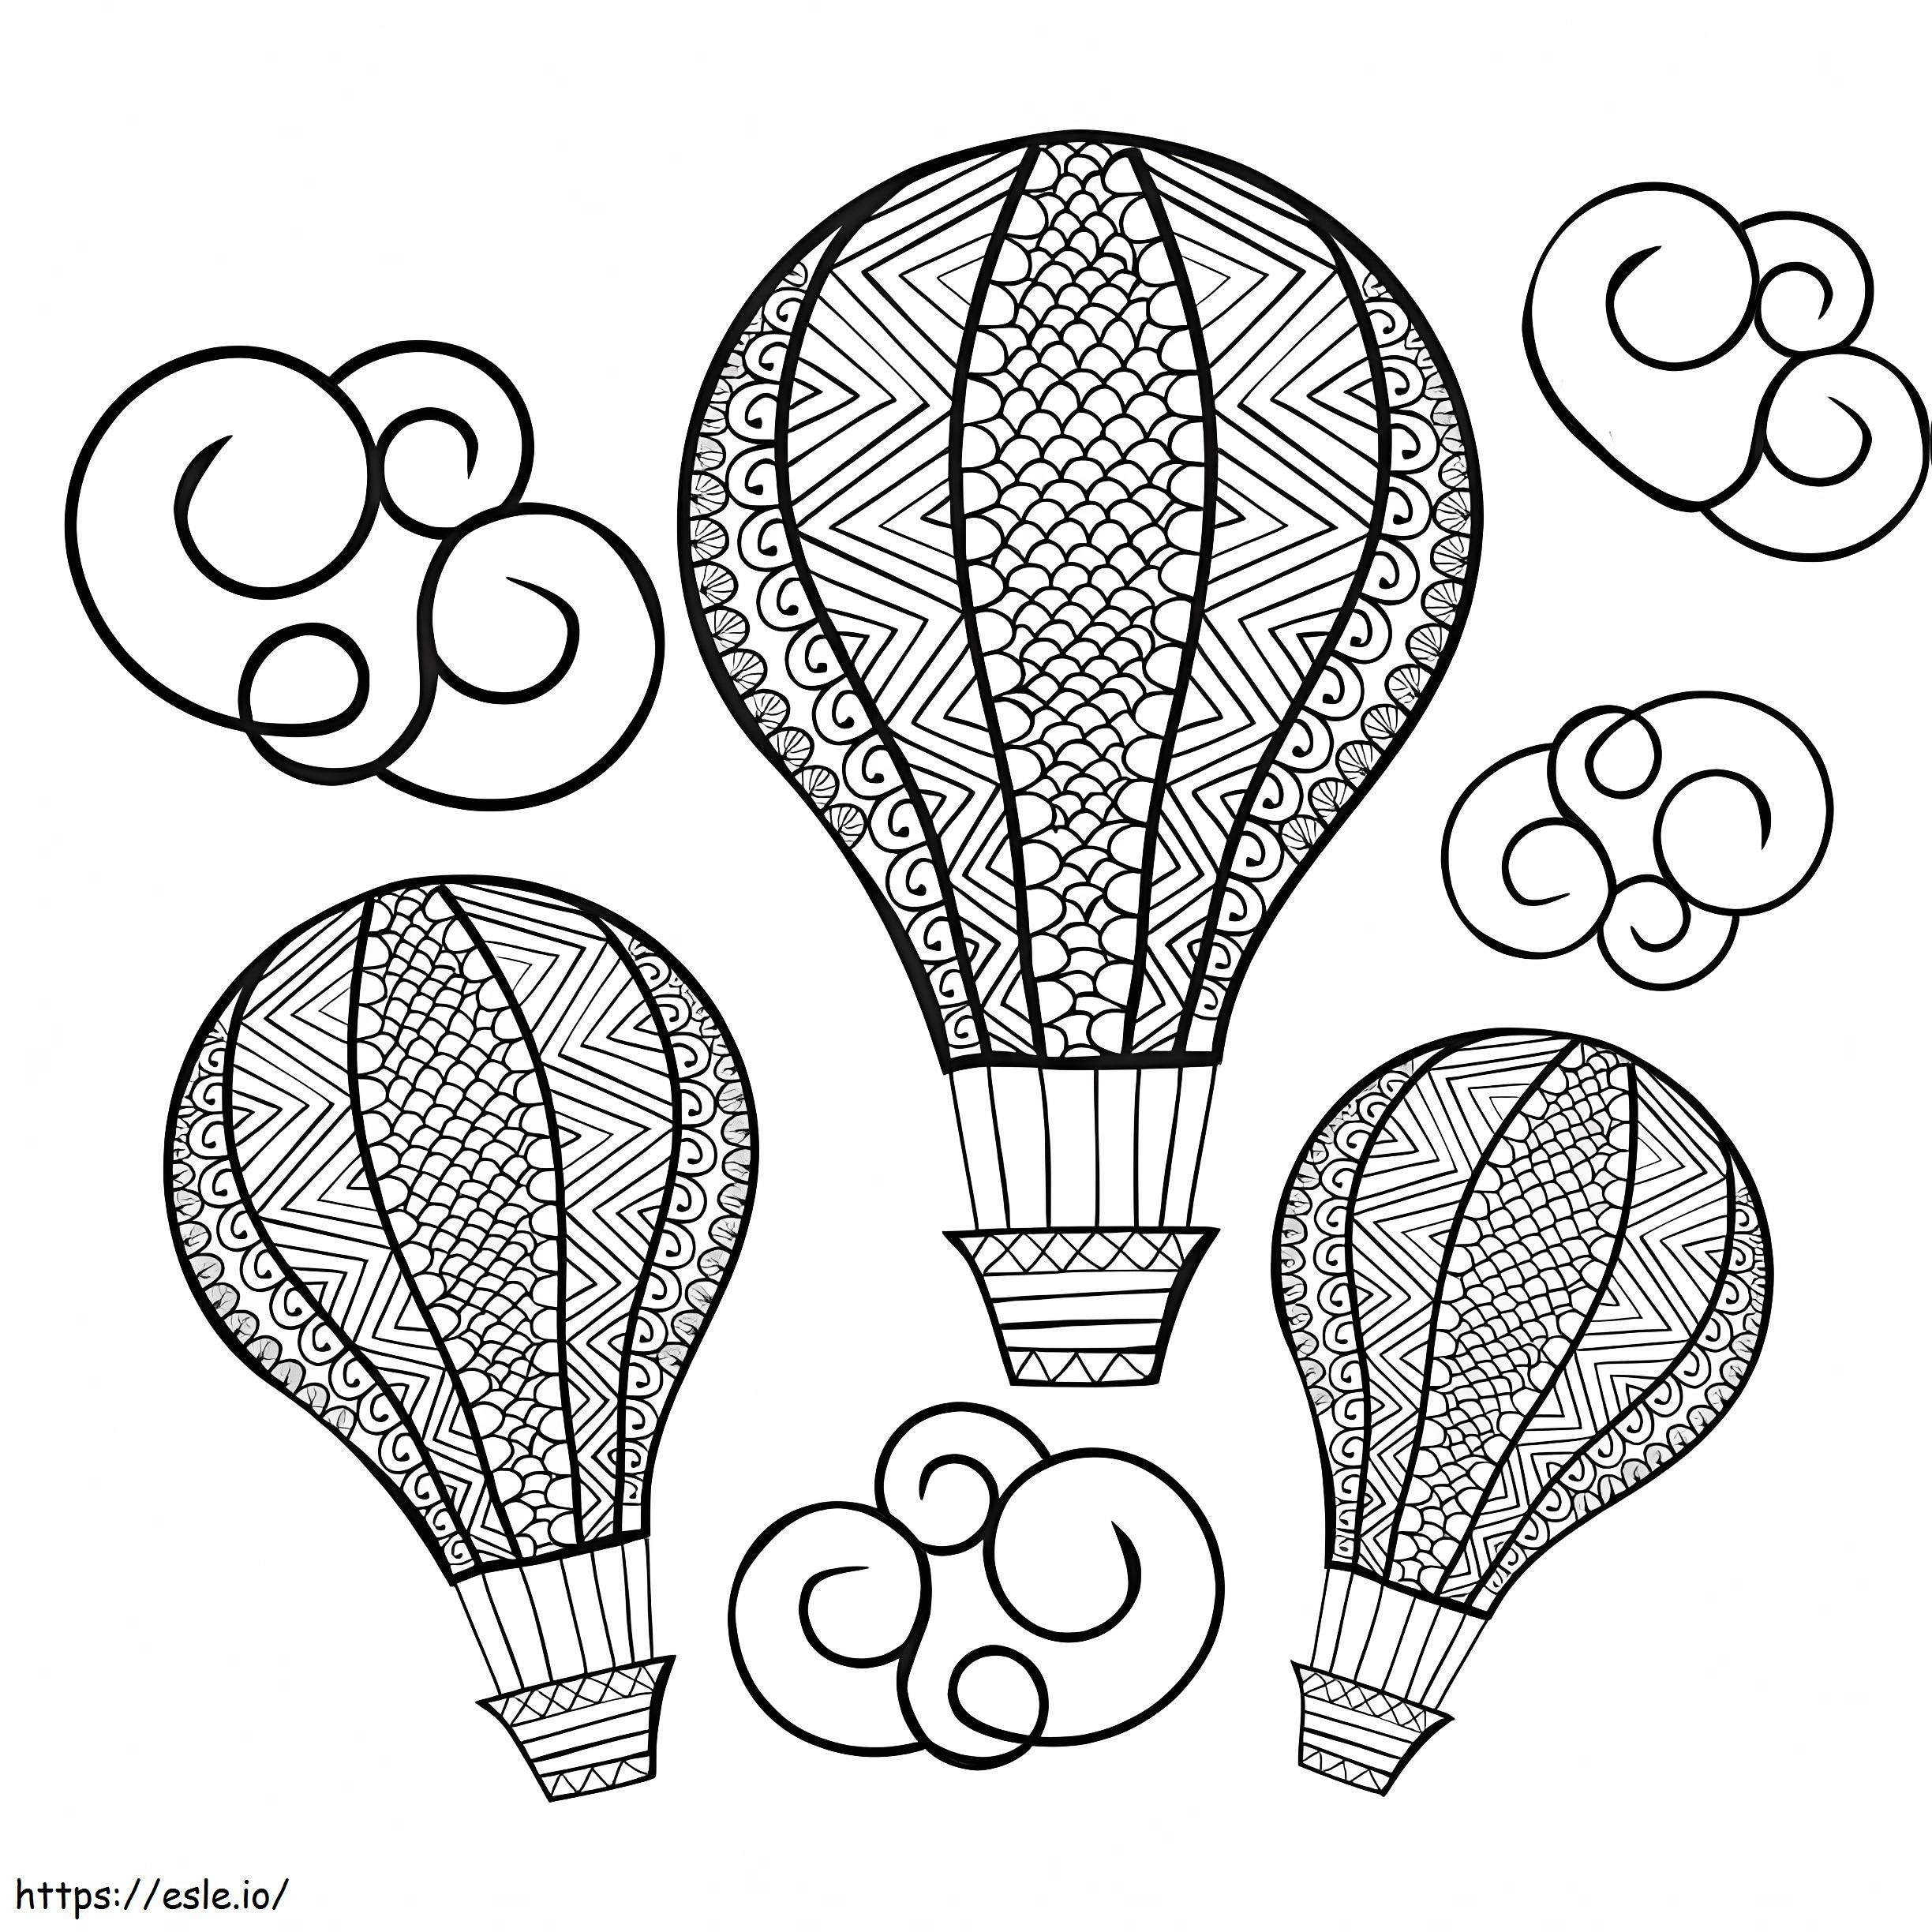 Three Hot Air Balloons coloring page